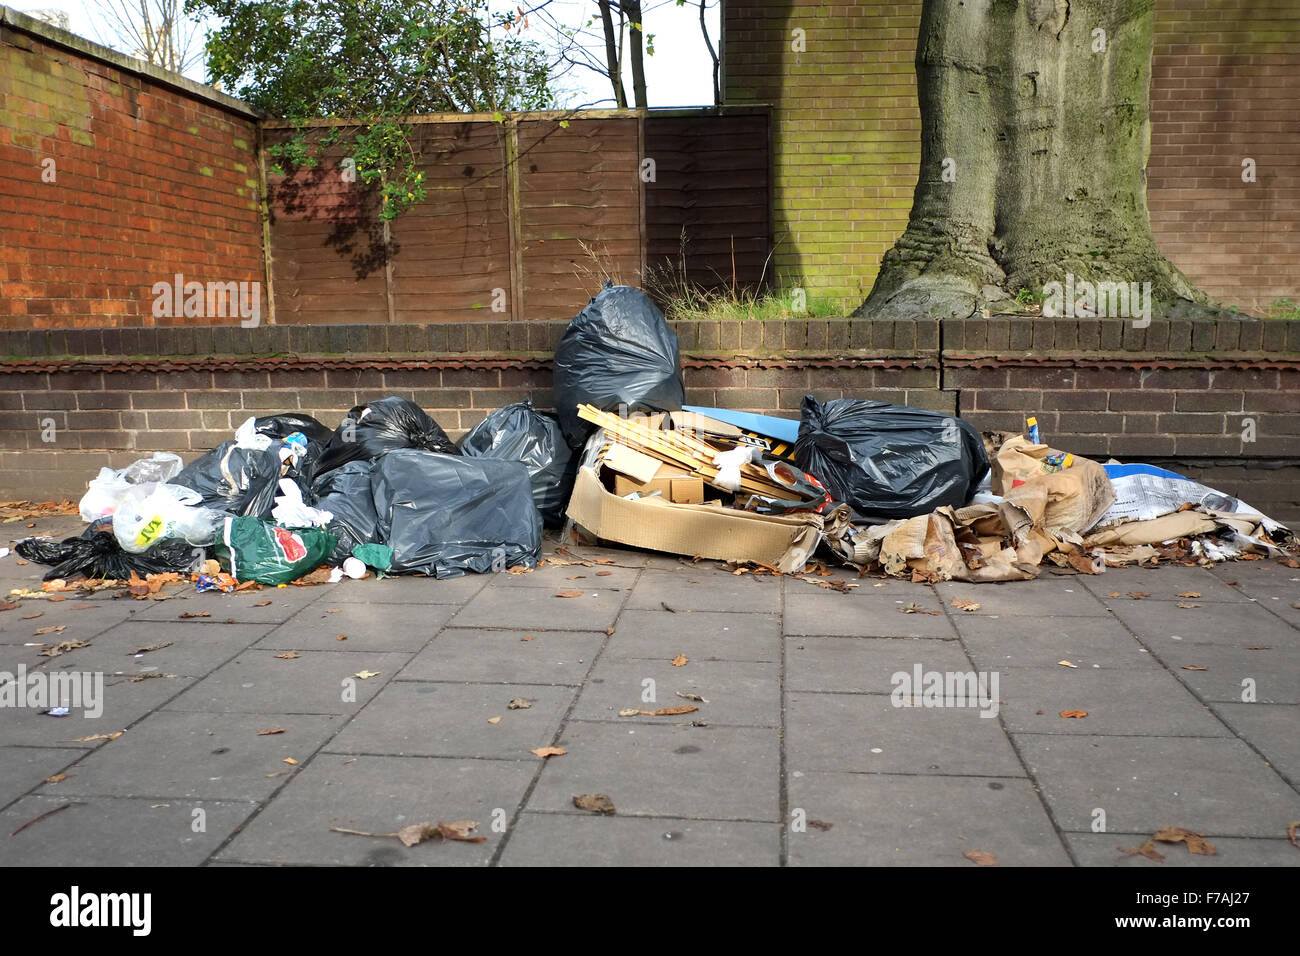 Desperdicios y basura a la izquierda en una calle del centro de la ciudad en el Reino Unido. La basura, en bin bolsas y cajas descartadas, es una monstruosidad y antihigiénicas peligro sanitario Foto de stock